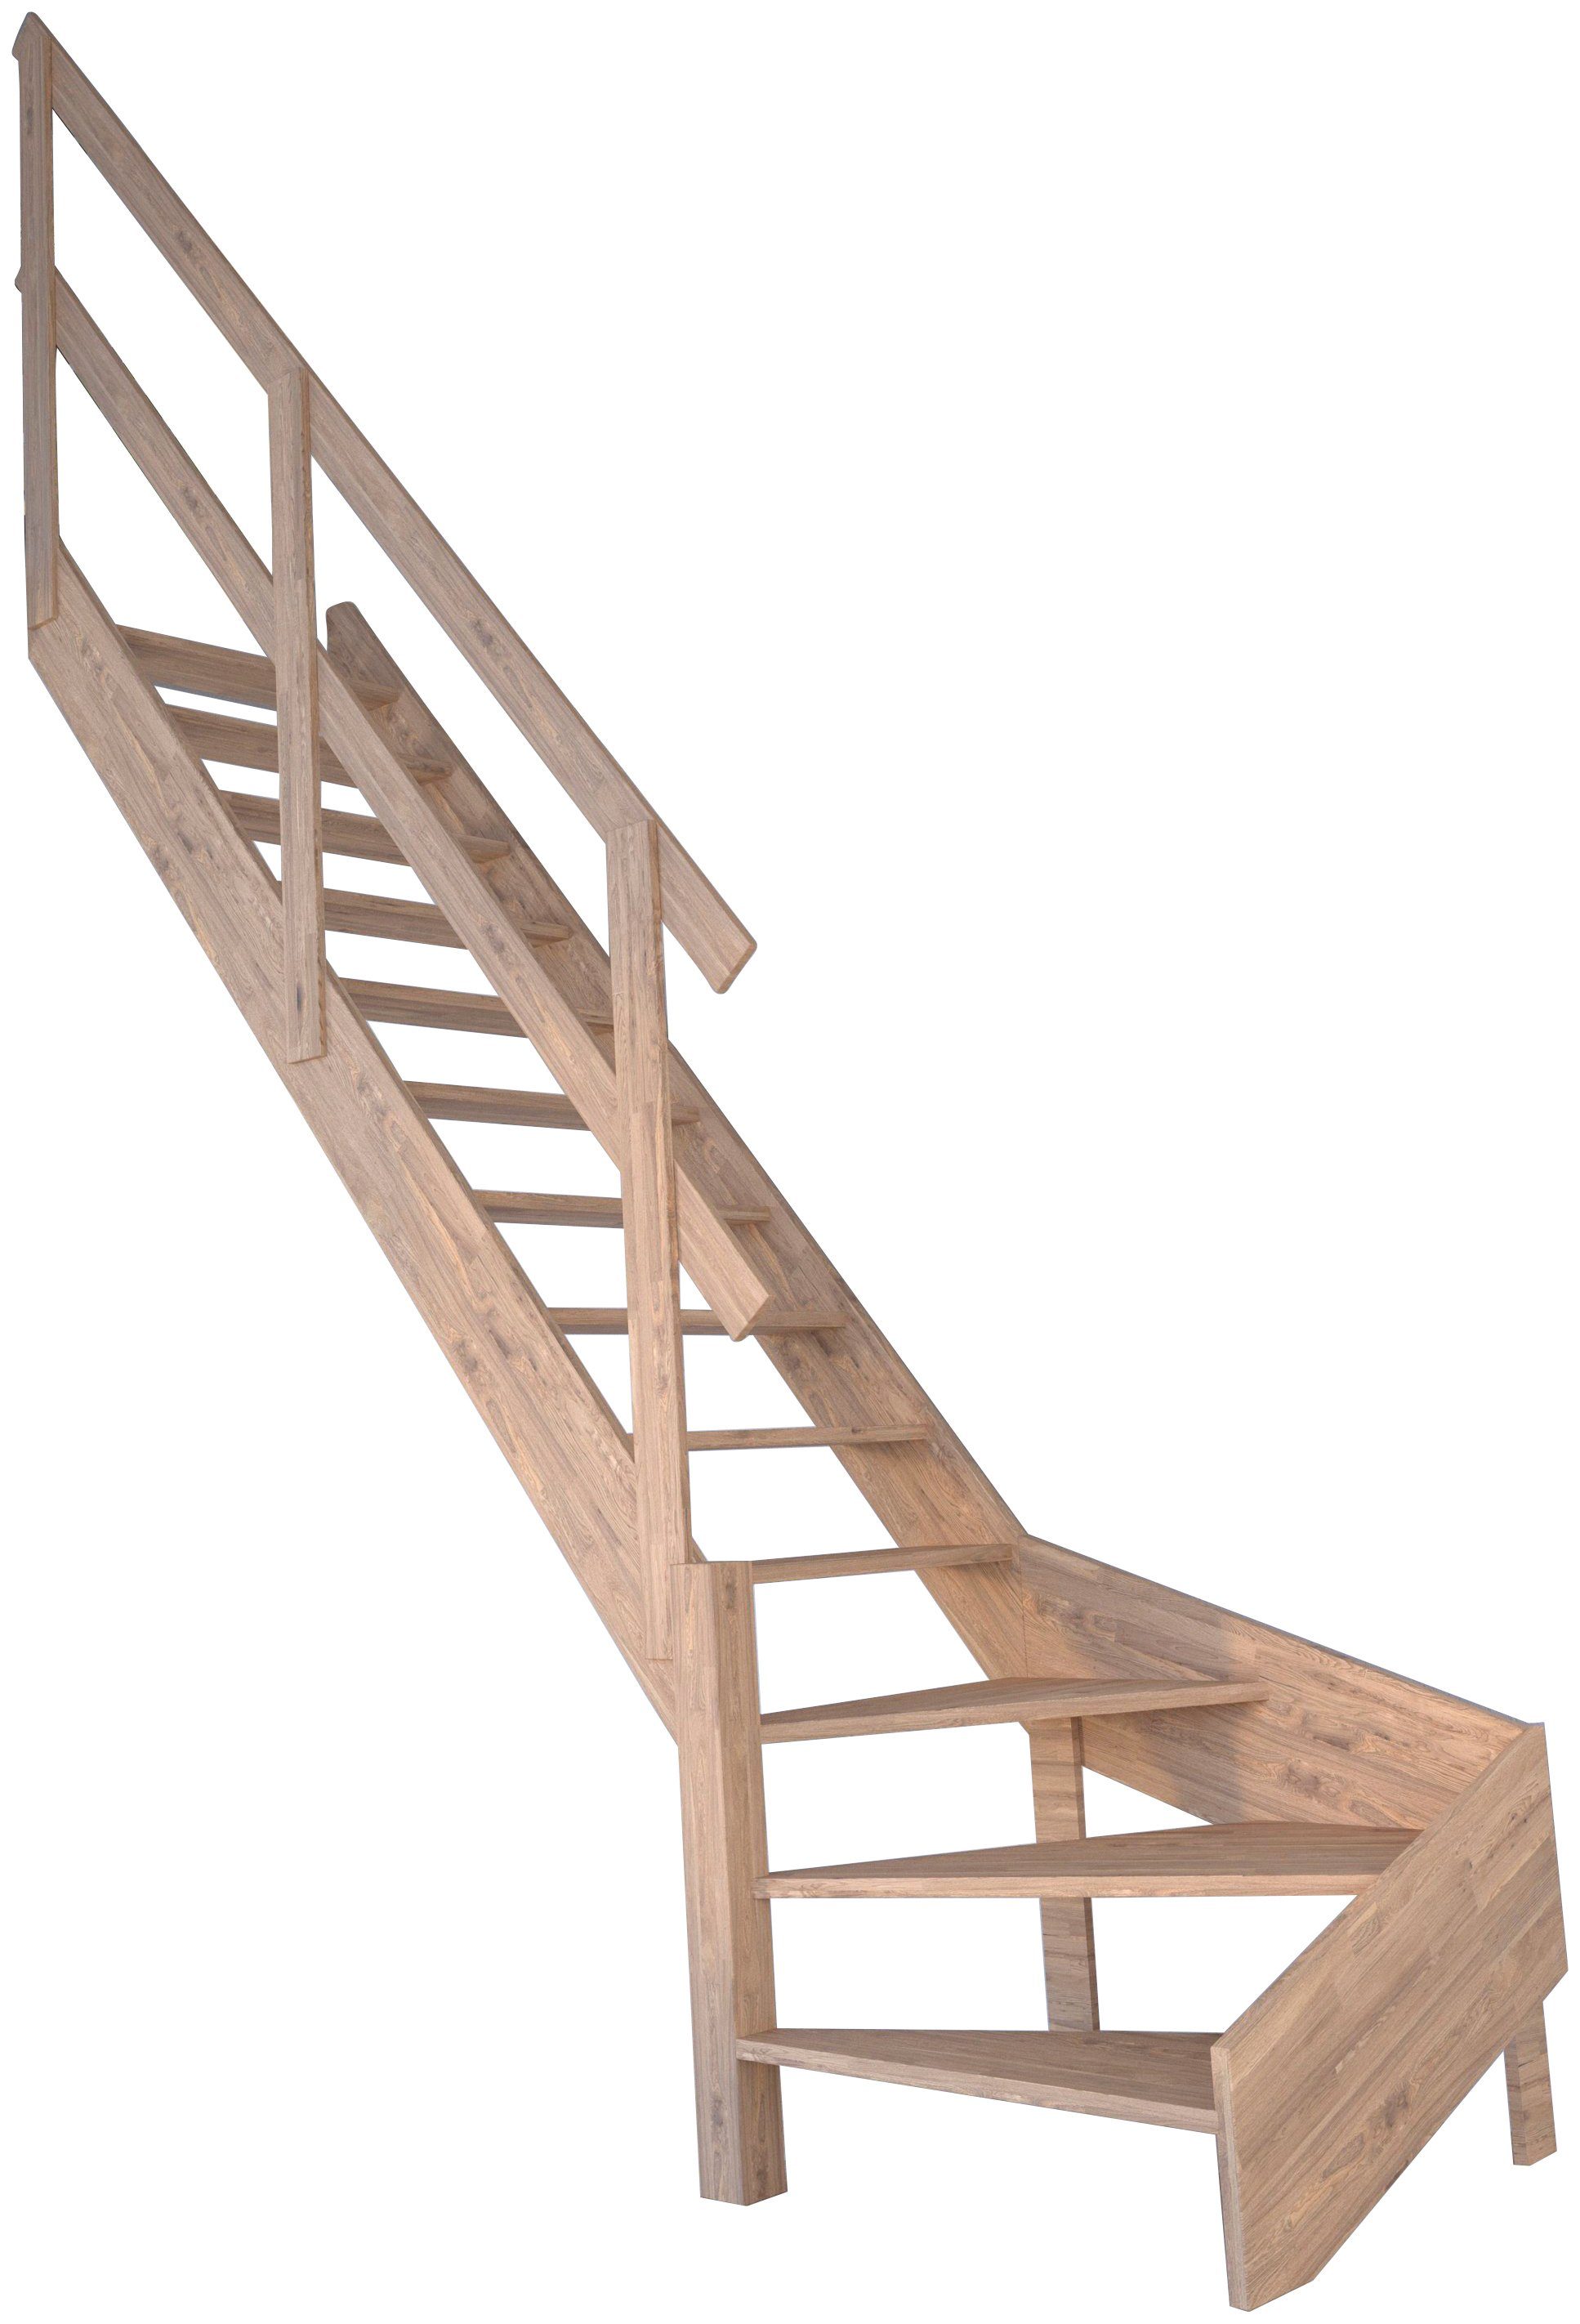 Starwood Raumspartreppe Massivholz 300 cm, Durchgehende bis Wangenteile offen, Links, Stufen gewendelt Geschosshöhen Holzgeländer, für Rhodos